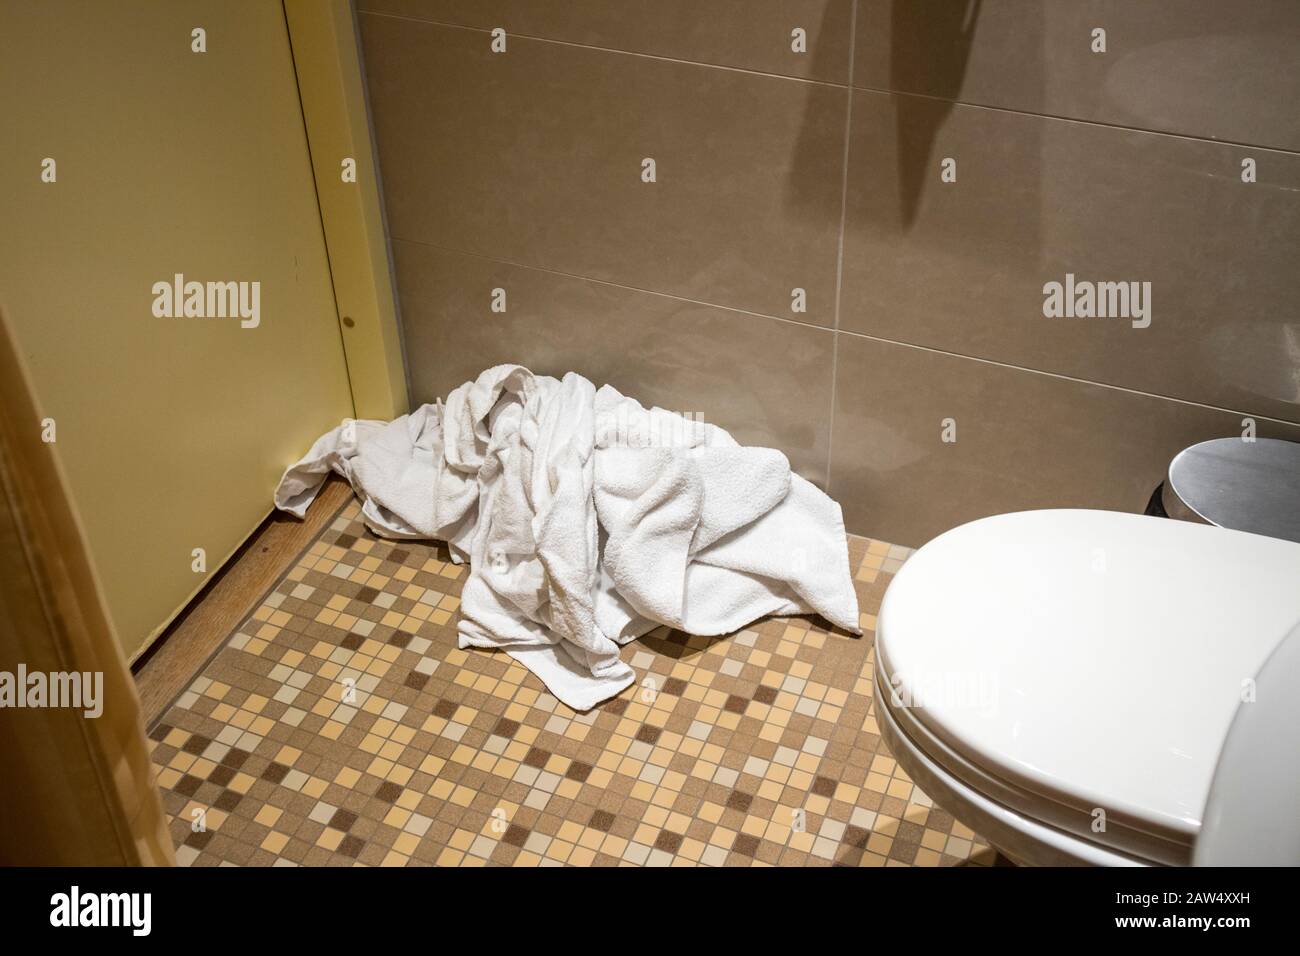 Pile de serviettes d'occasion sales sur le sol de la salle de bains de l'hôtel. Le ménage ne remplace que les serviettes utilisées sur le sol par des serviettes propres. Économiser de l'eau, du savon, de l'énergie Banque D'Images